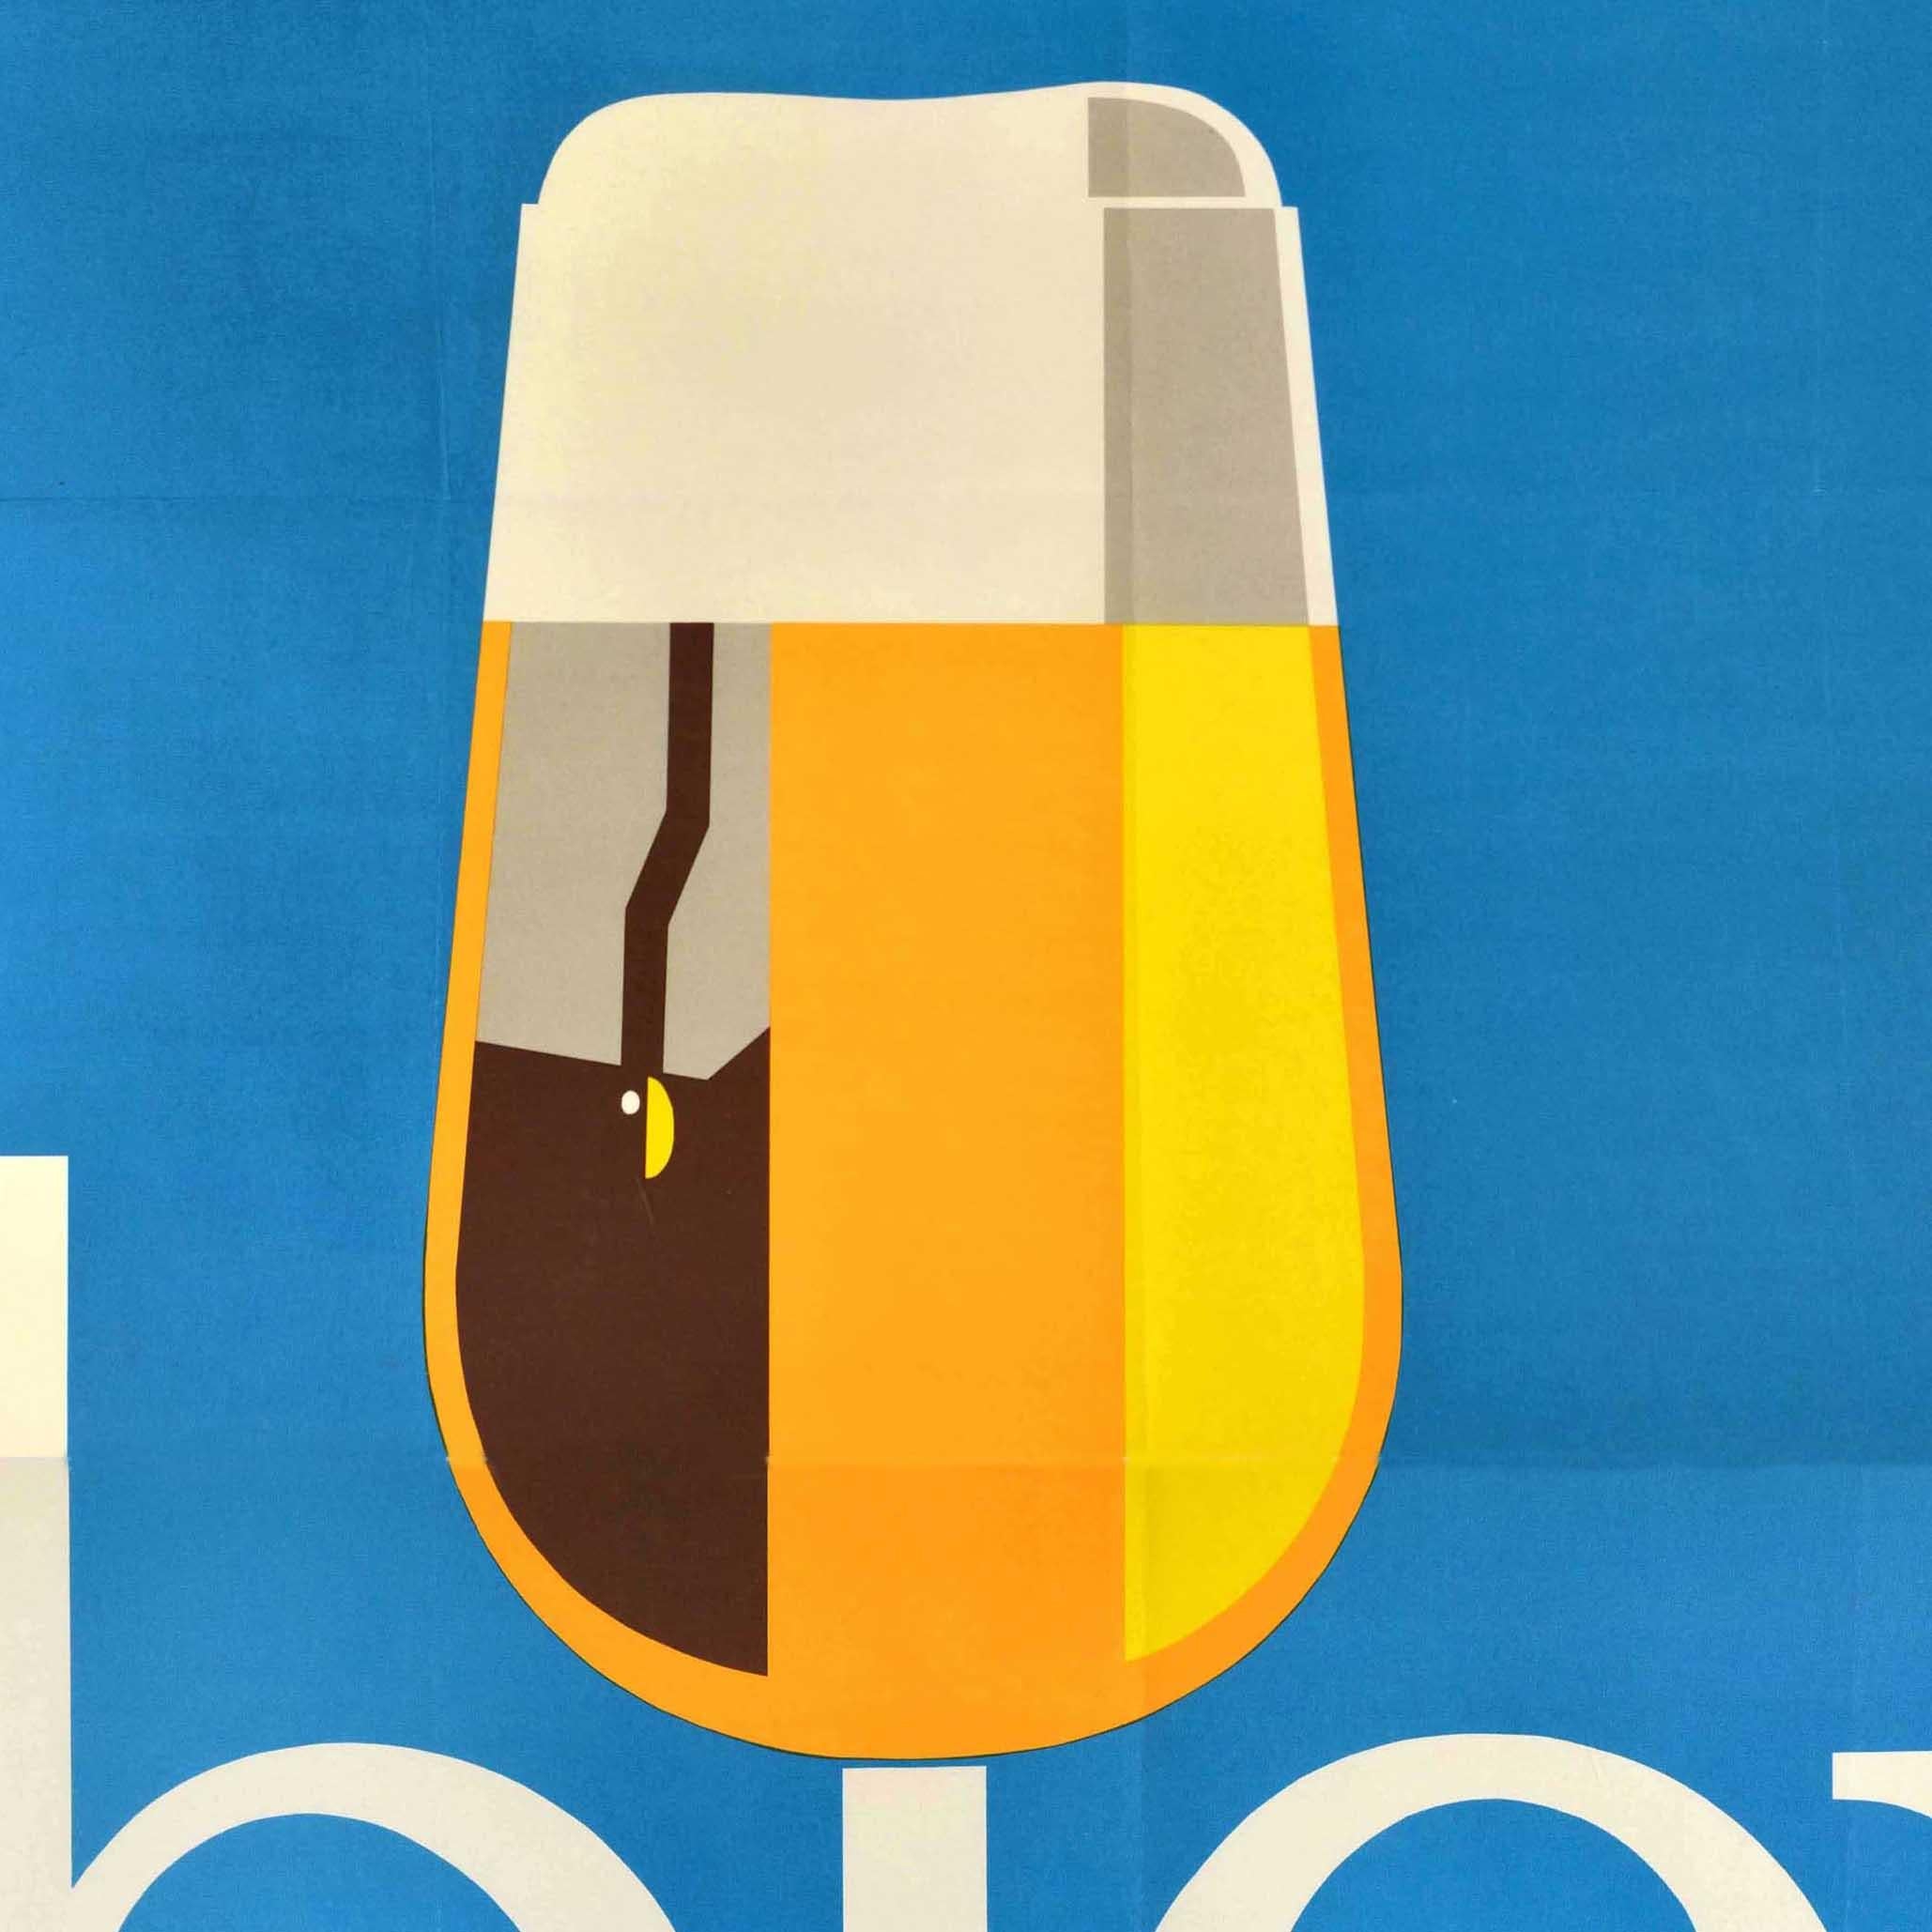 Original Vintage-Werbeplakat - Mass halten bier trinken / Drink beer moderately - mit der Abbildung eines Bierglases auf dem i von Bier vor einem blauen Hintergrund. Großes Format. Guter Zustand, Falten, Knicke, Tintenstempel auf der Rückseite, 2